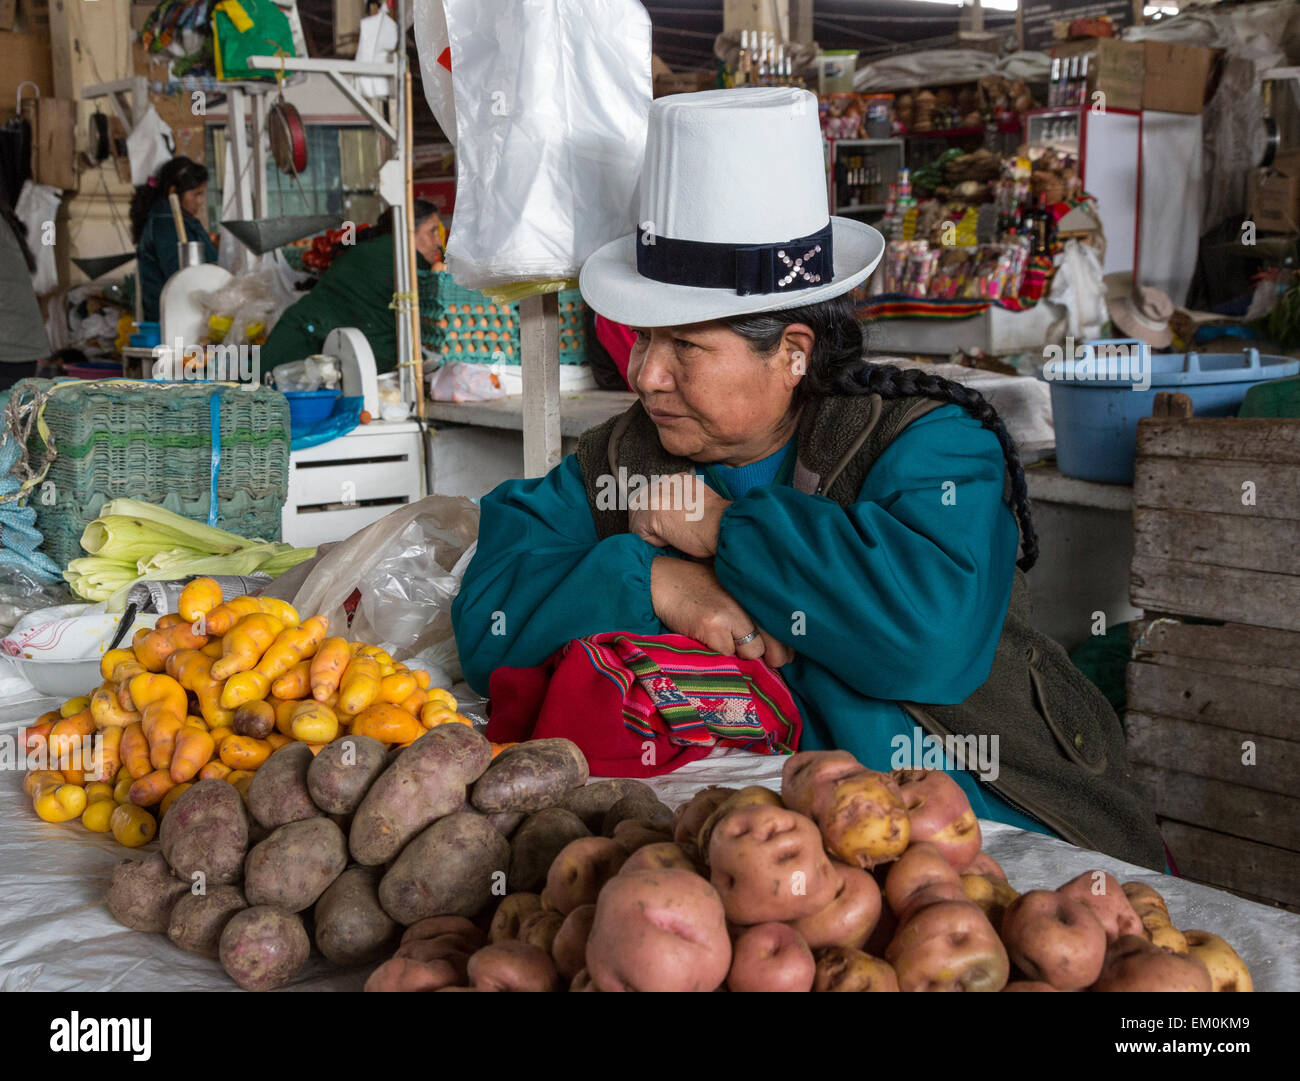 Perù Cusco. Donna Peruviana la vendita di due varietà di patate, più l'olluco (estrema sinistra, di color arancione), un vegetale Andina. Foto Stock